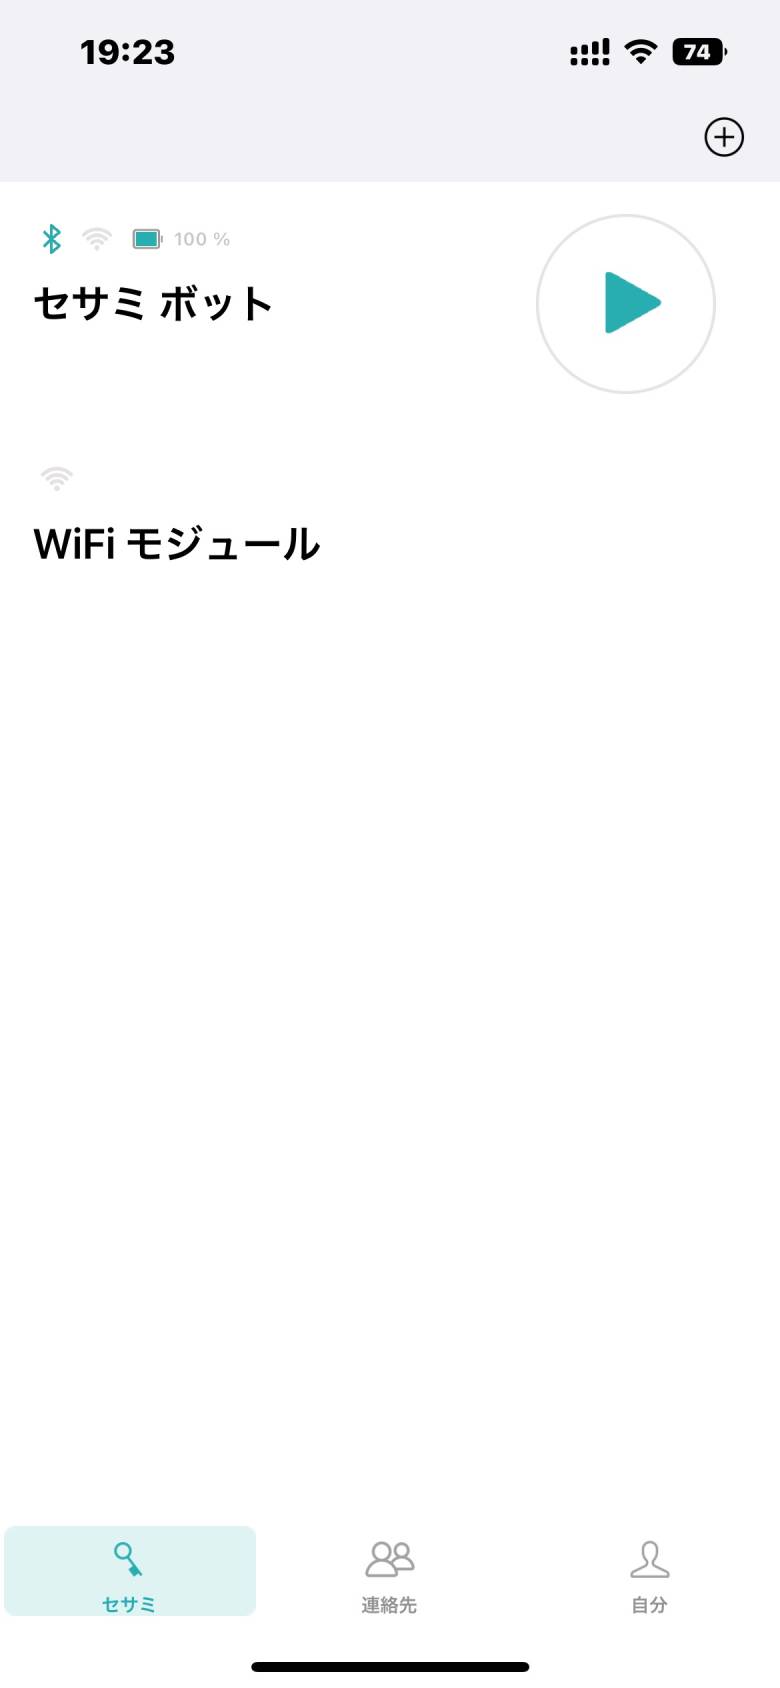 Wi-Fiにつながってない状態だと、アプリ画面のWi-Fiマークに色がつかない